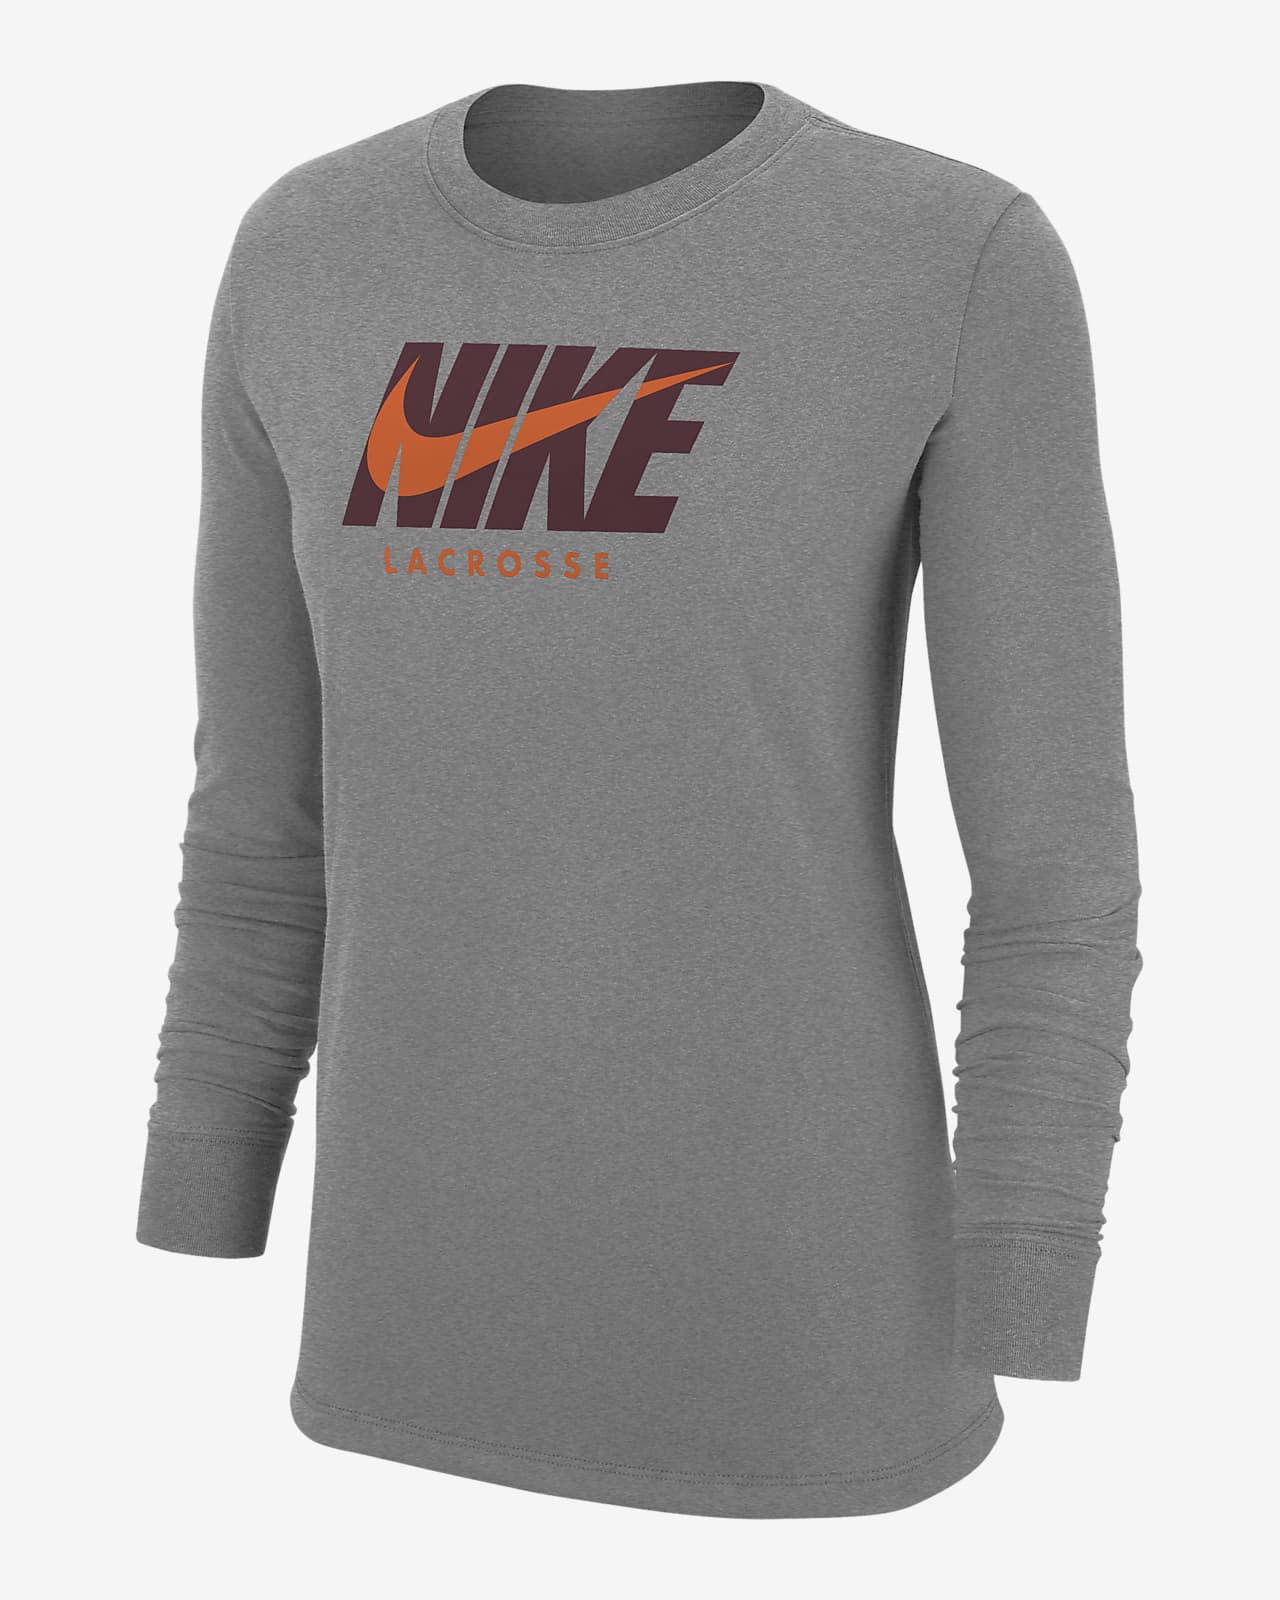 Nike Women's Lacrosse Long-Sleeve T-Shirt